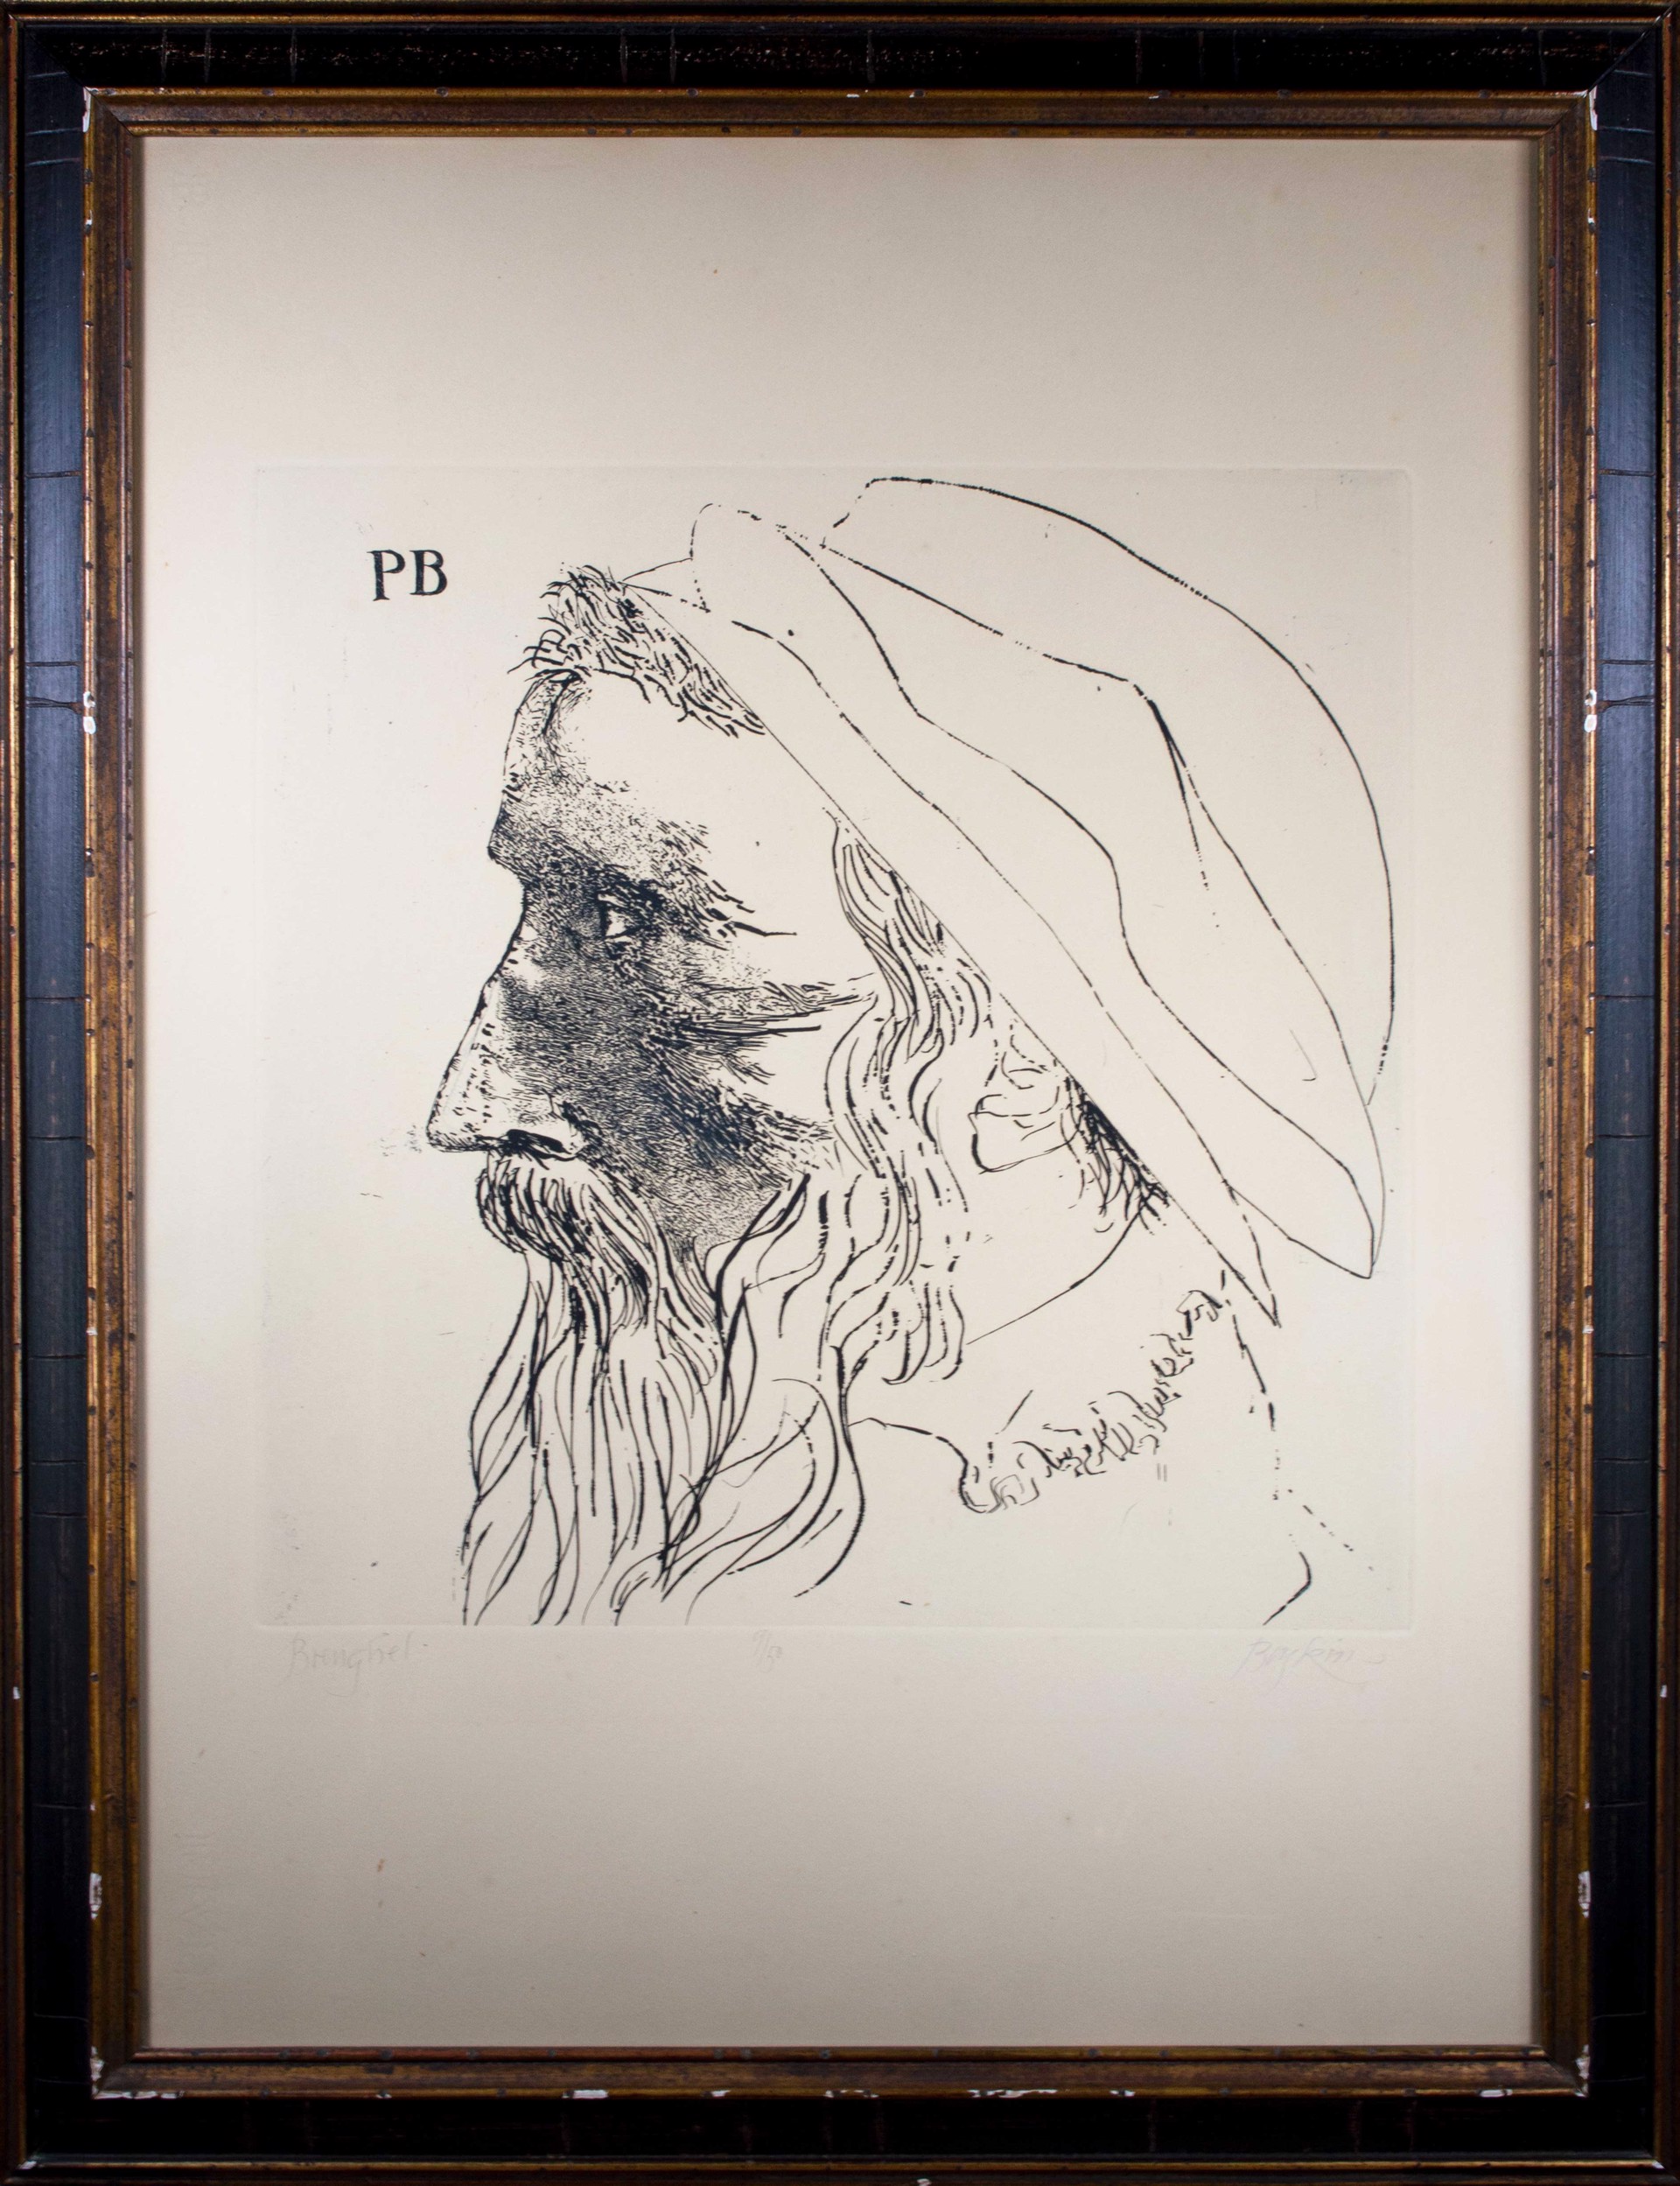 Portrait of Peter Breughel by Leonard Baskin